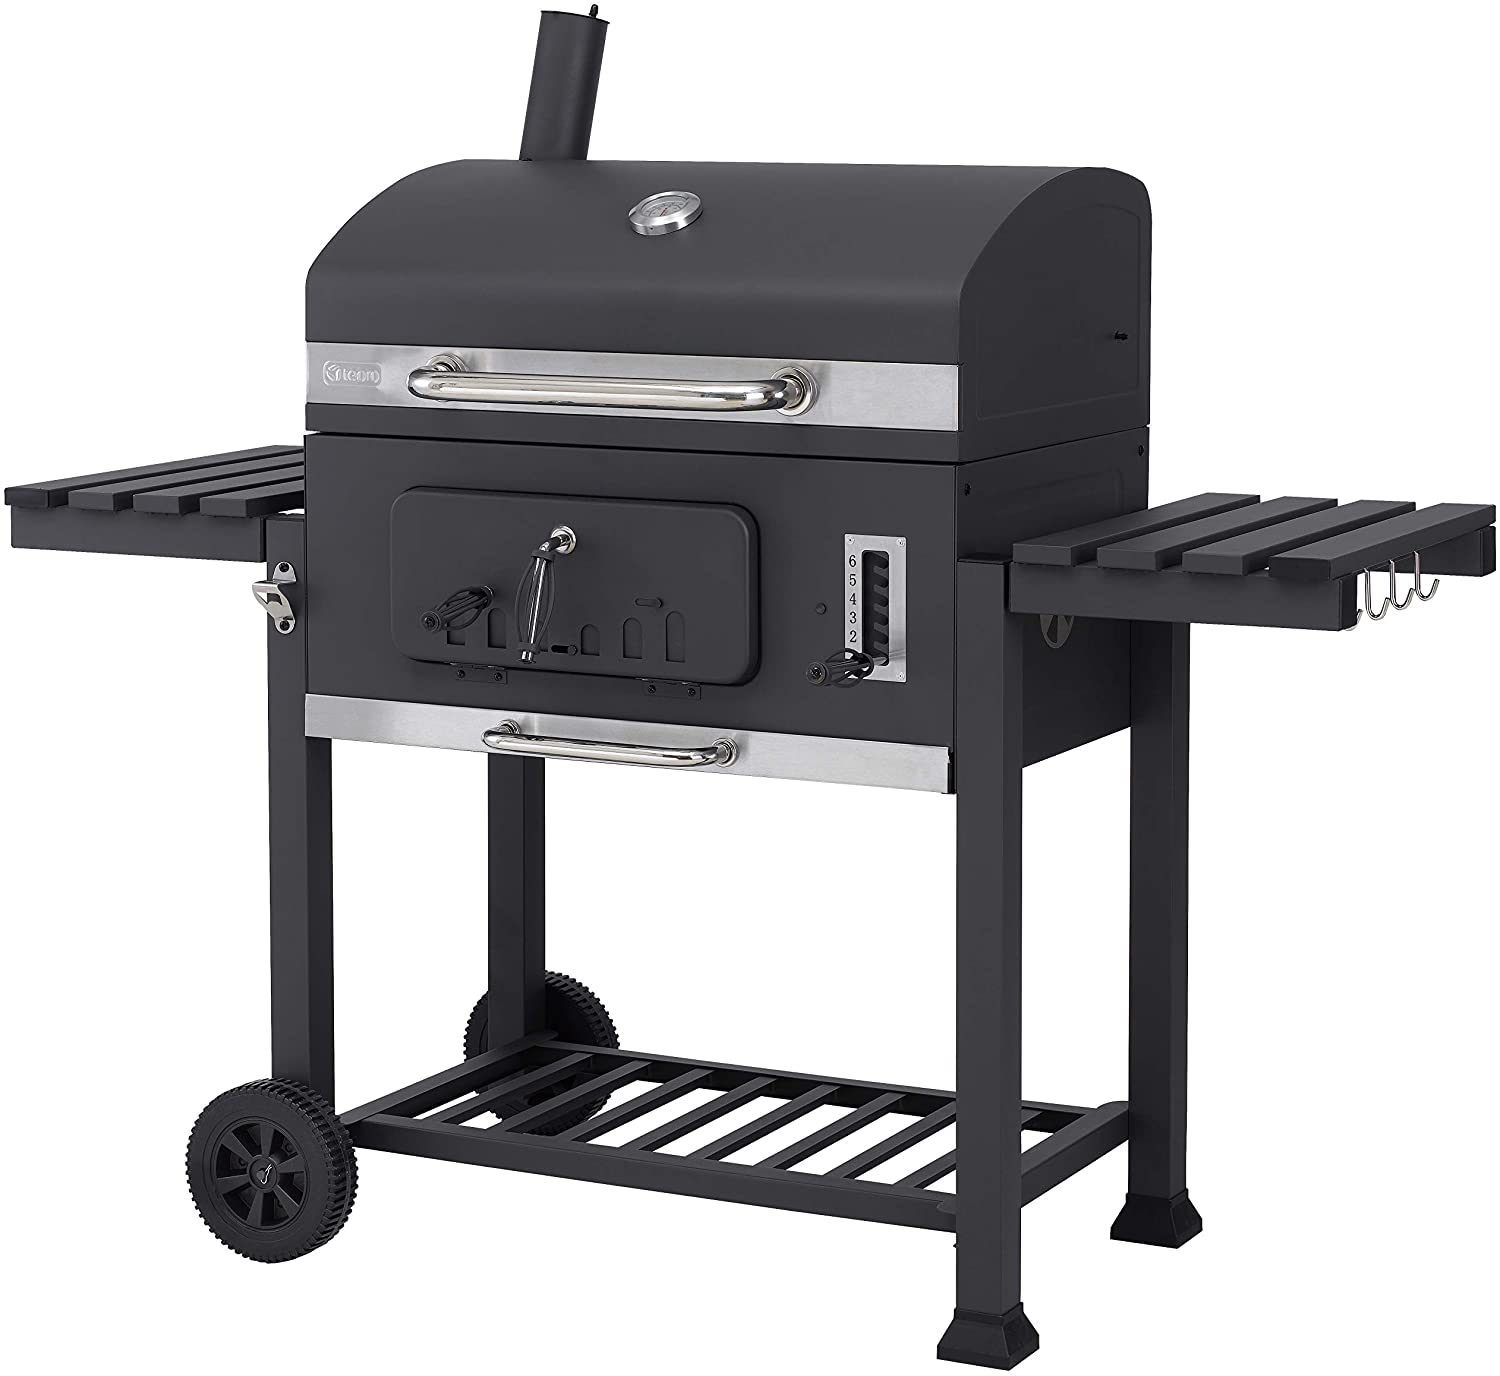 Tepro Toronto XXL 2019 Carrello per barbecue in acciaio INOX colore Antracite 🥓 Barbecue a Carbonella🍗 Ricetta di polpo alla griglia